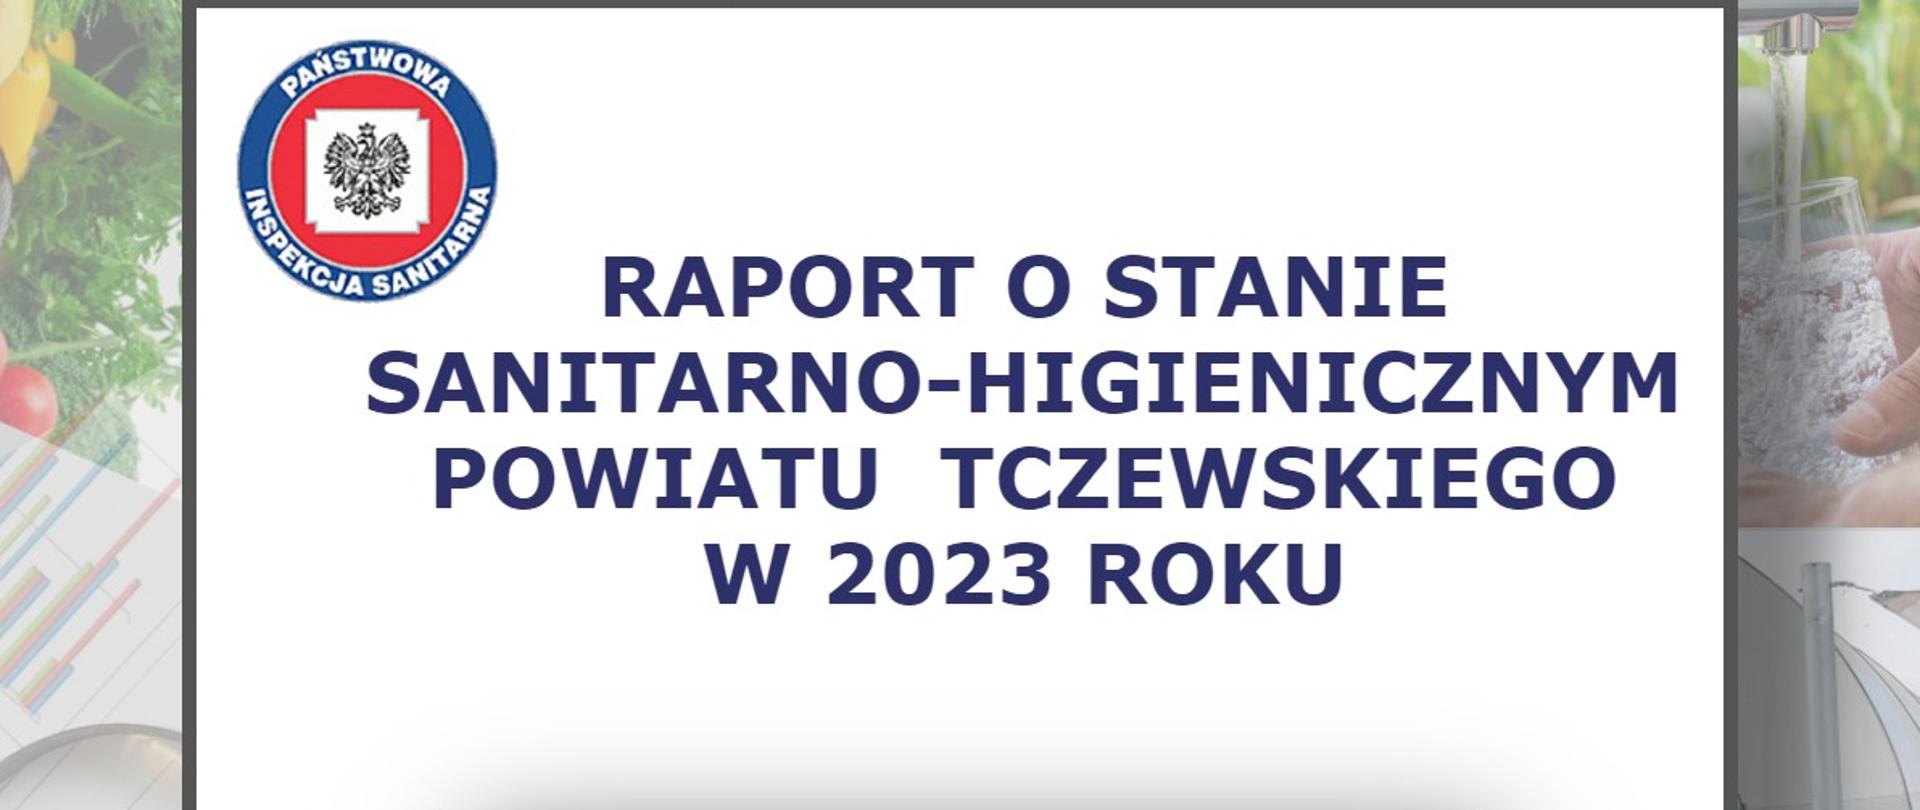 Raport o stanie sanitarno- higienicznym powiatu tczewskiego za rok 2023